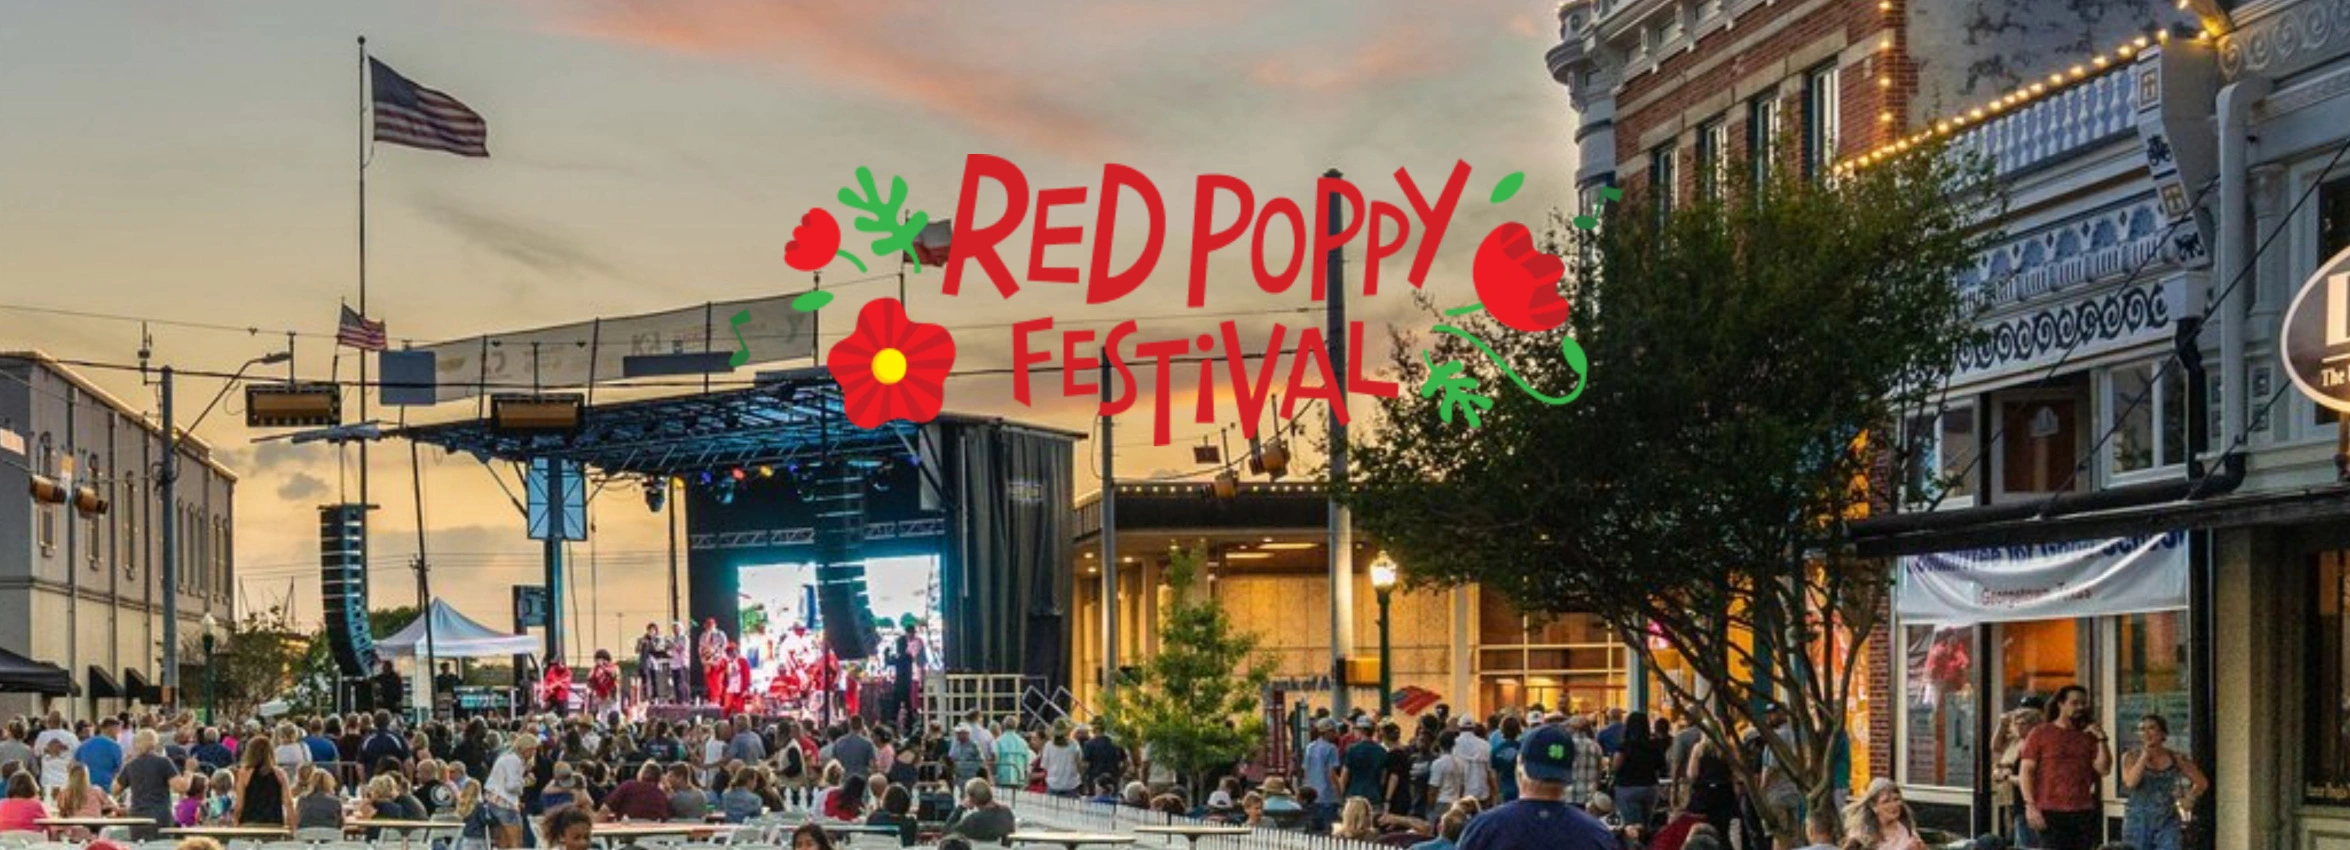 Red-Poppy-Festival_Desktop_ET